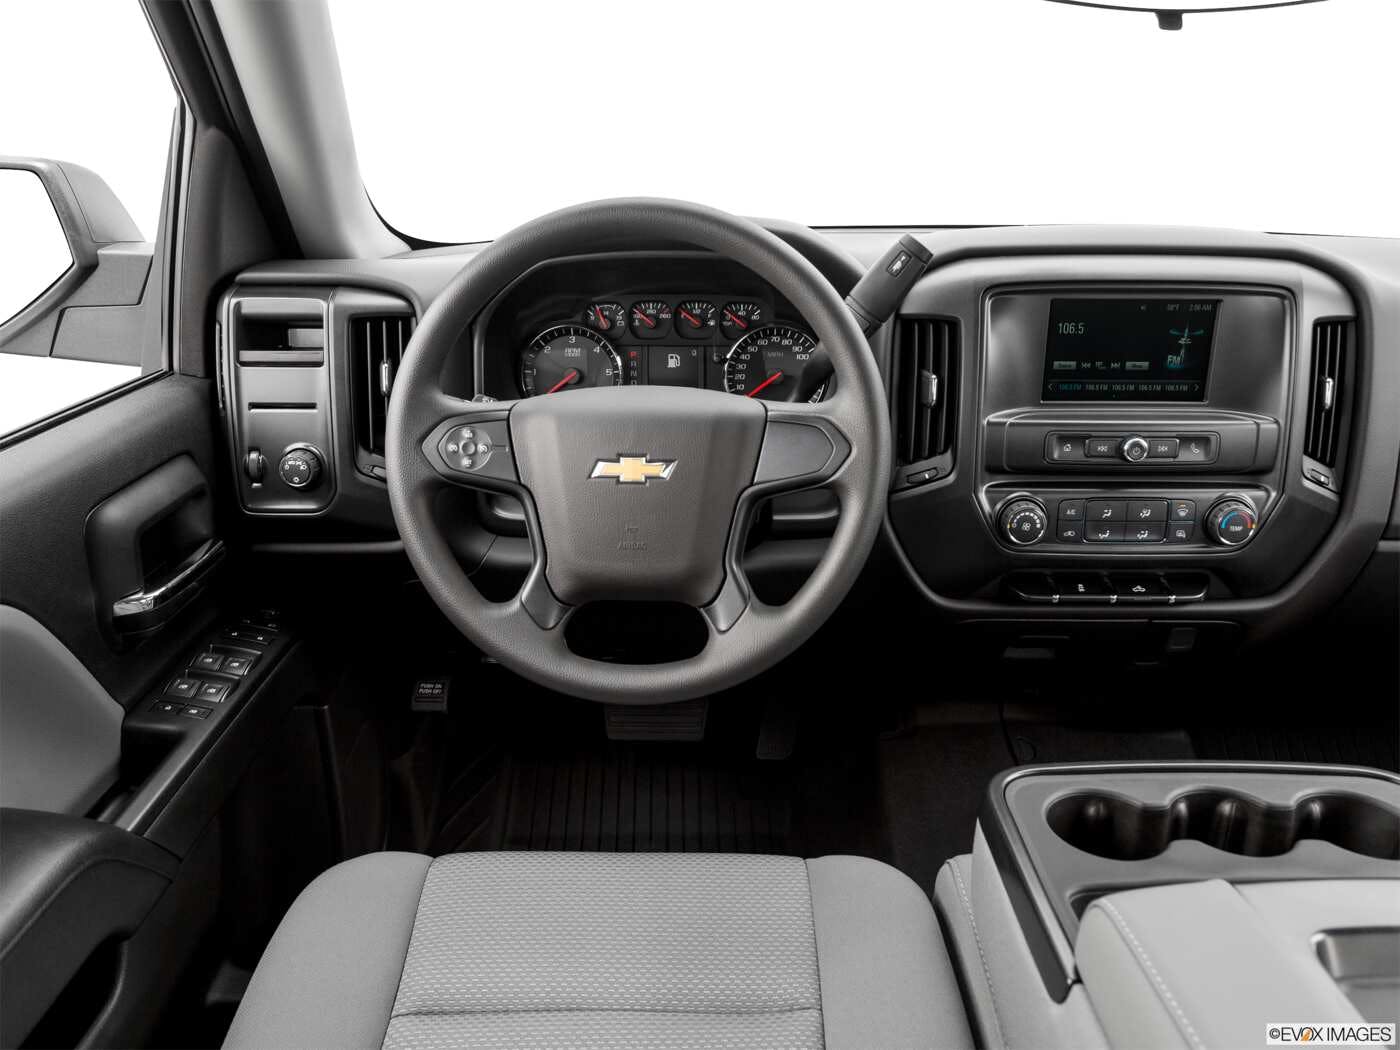 2019 Chevrolet Silverado 1500 LD Review | Pricing, Trims & Photos - TrueCar